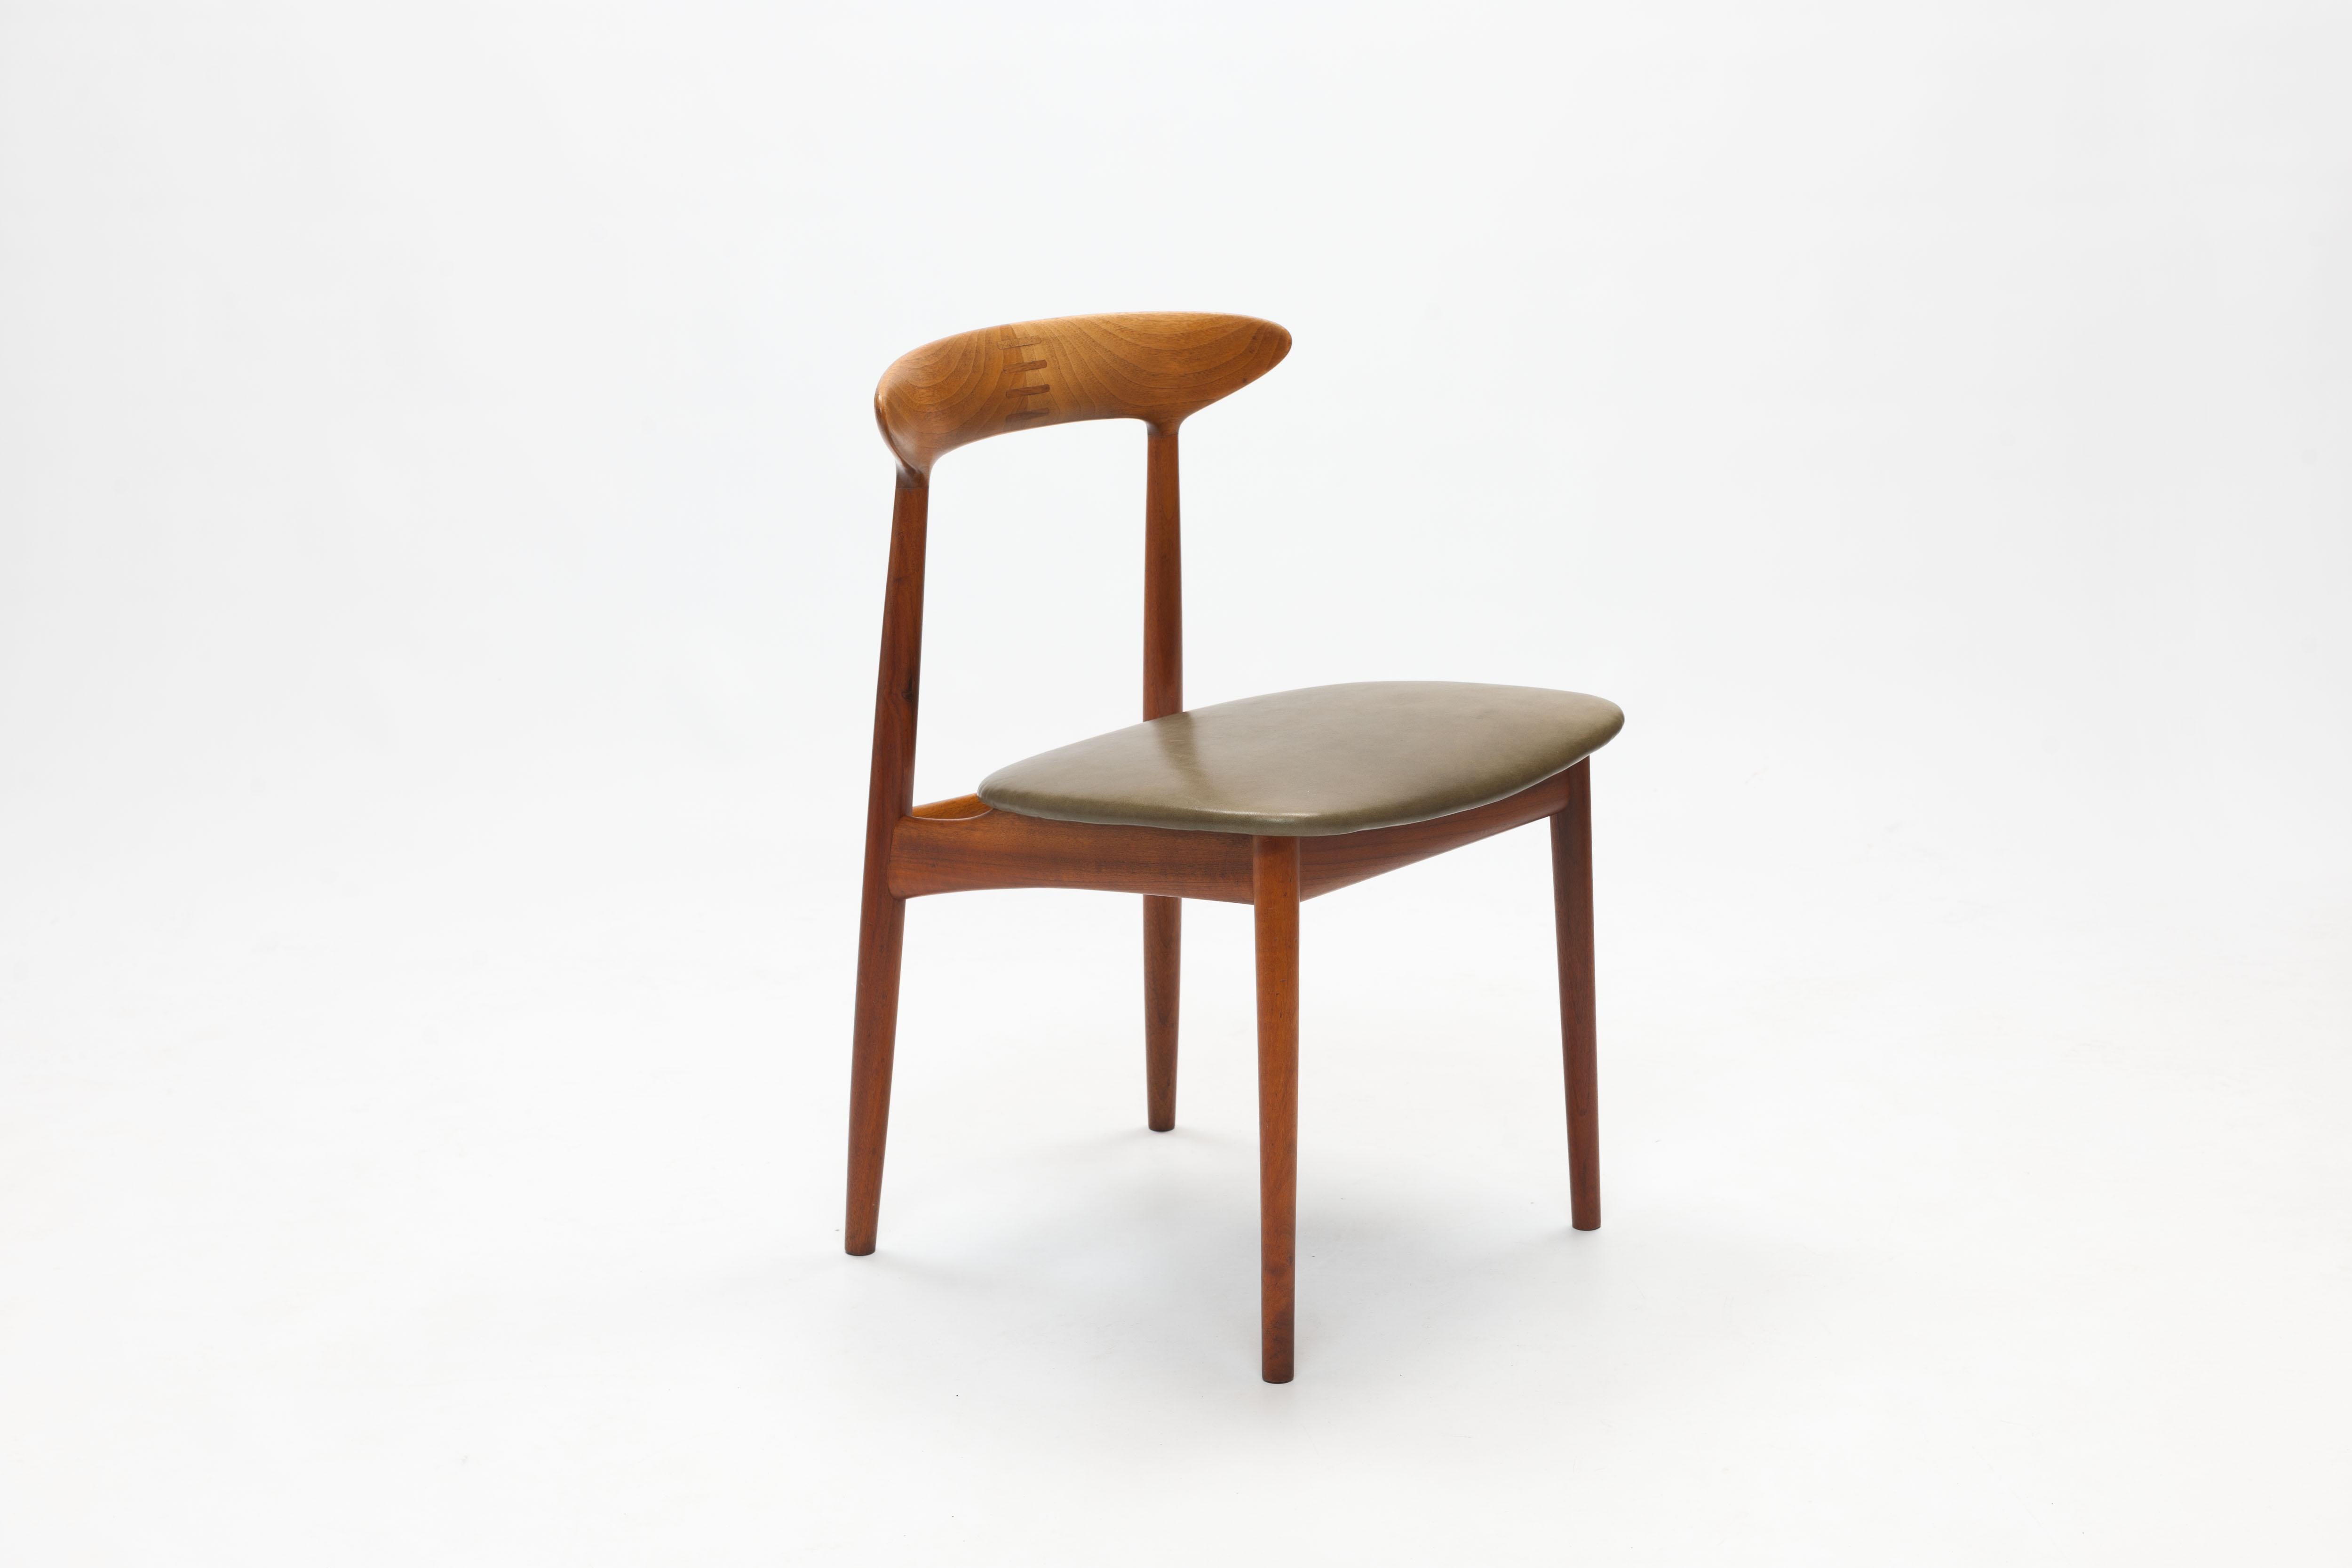 Scandinavian Modern Danish Teak Chair by Kurt Østervig with Wooden Inlay Back Support